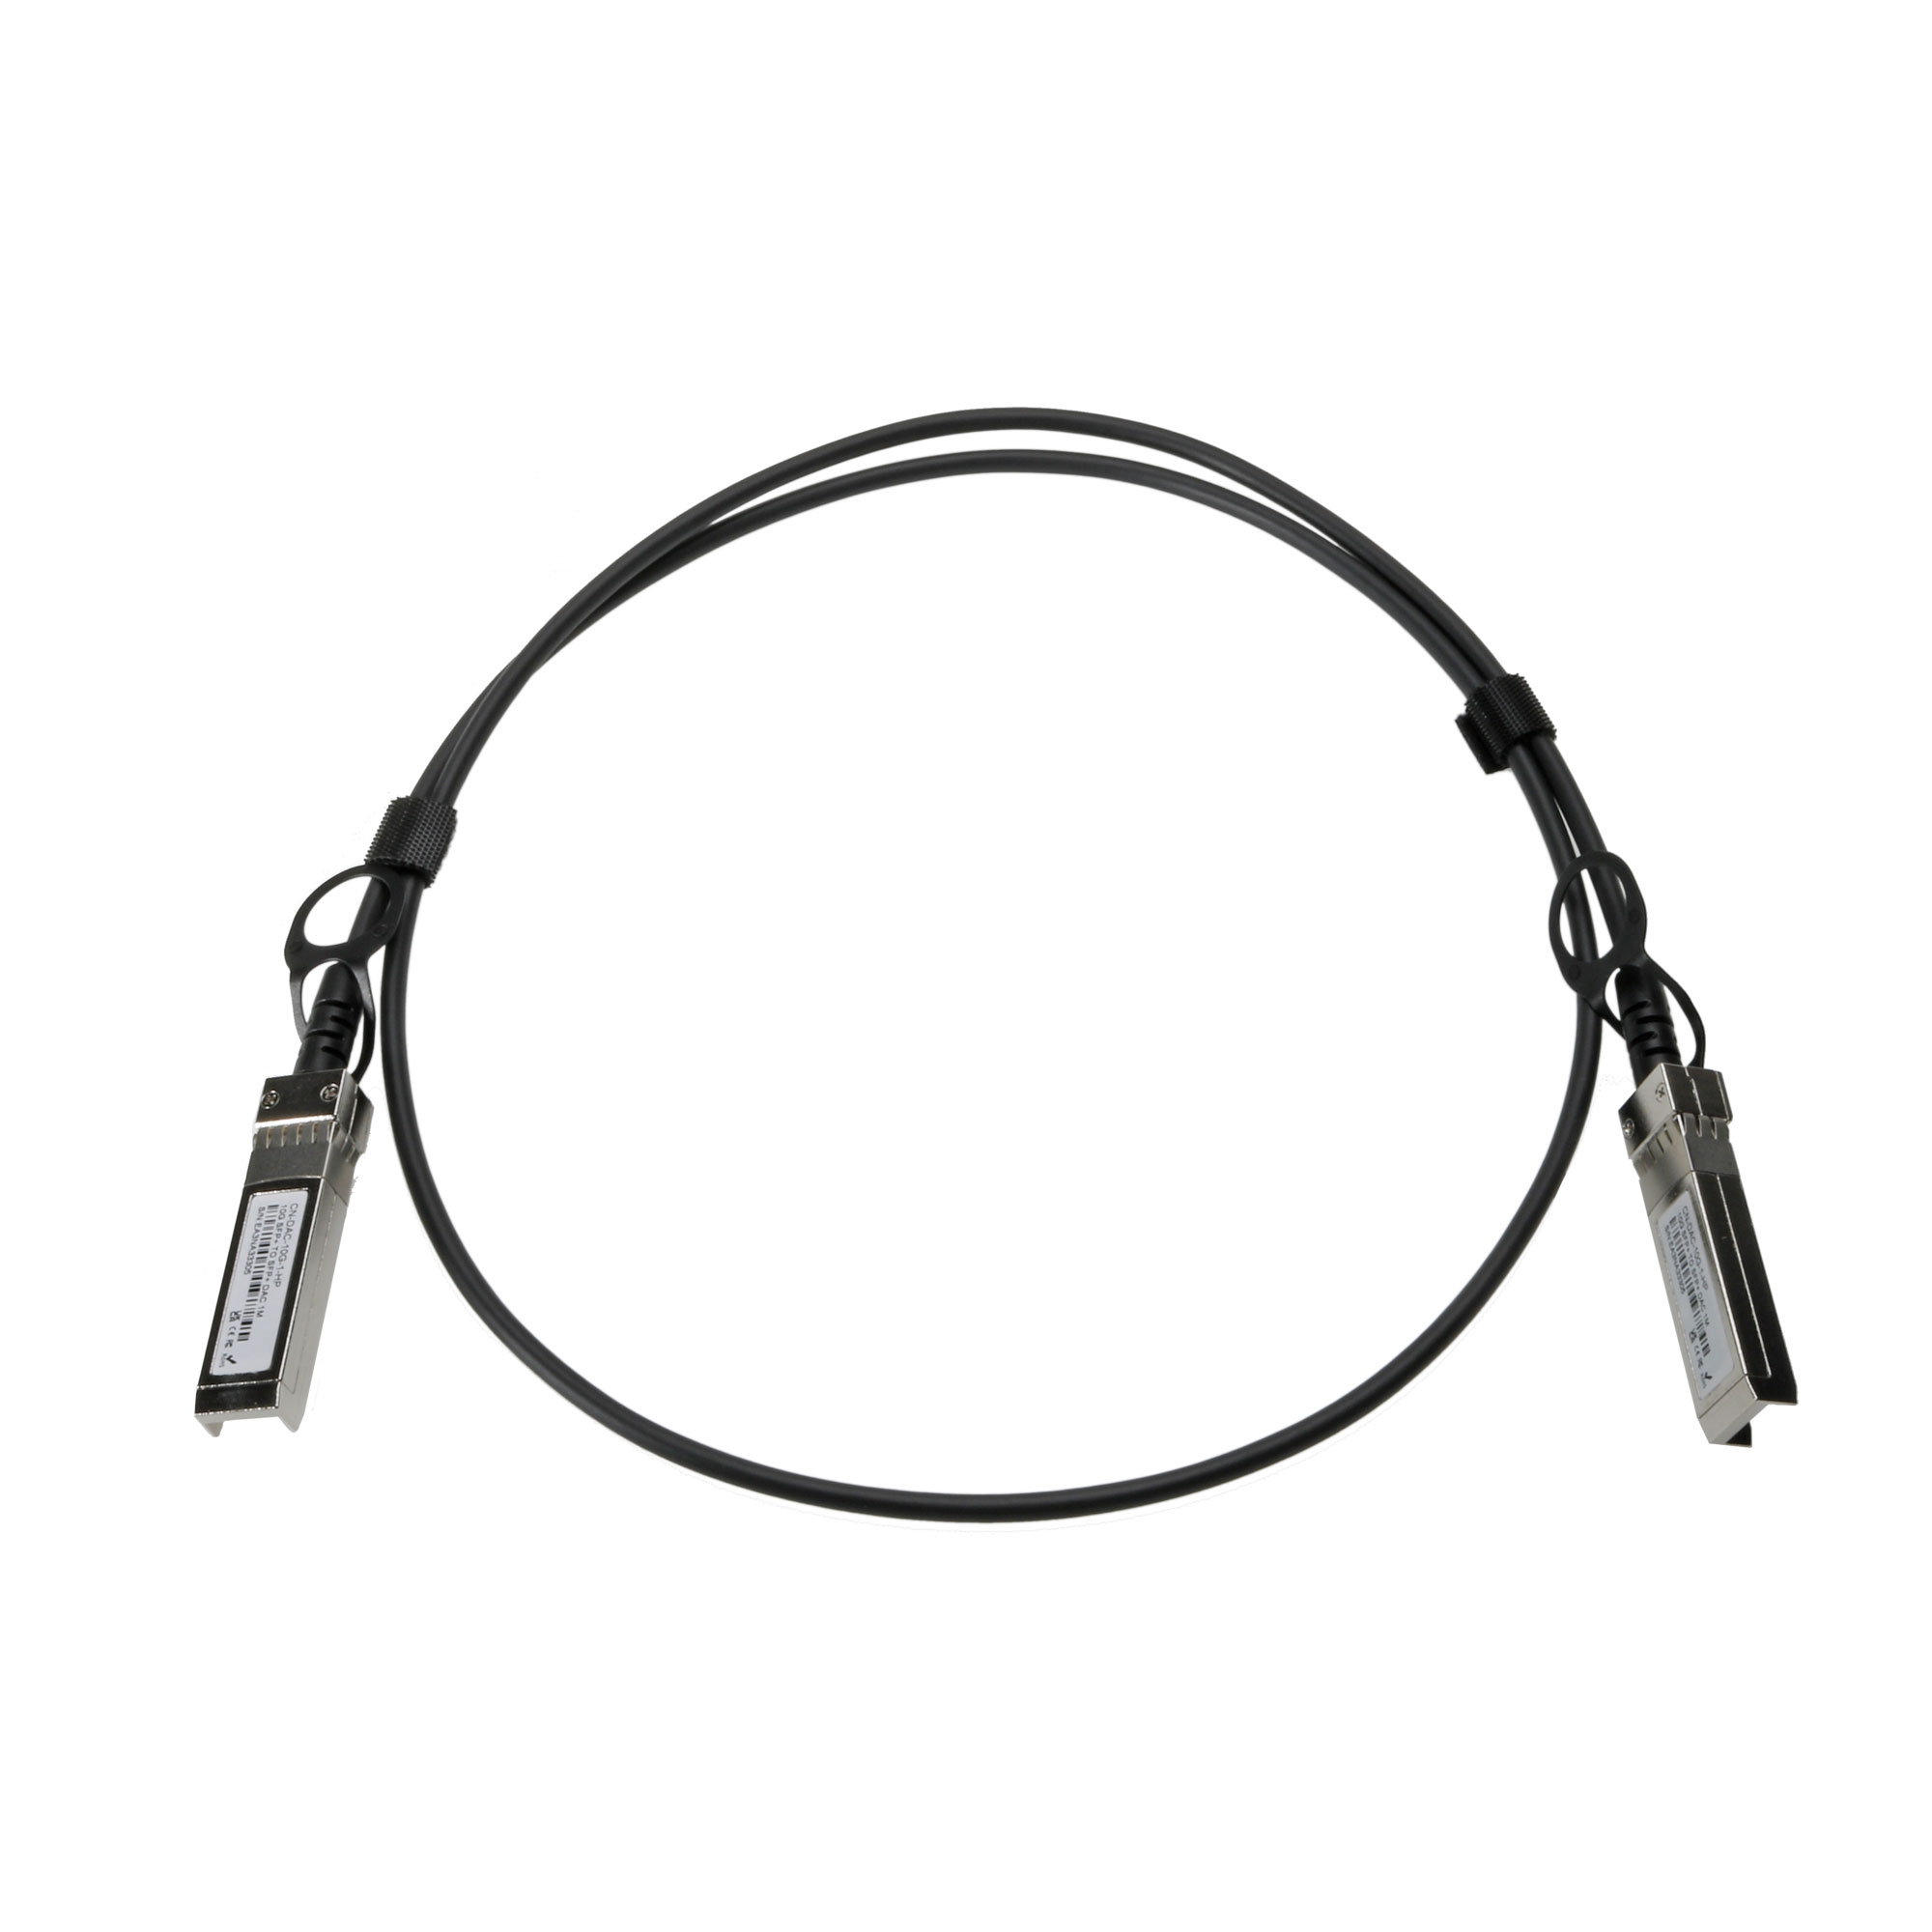 10G SFP+ Direct Attach Cable 1m HP/Aruba Compatible